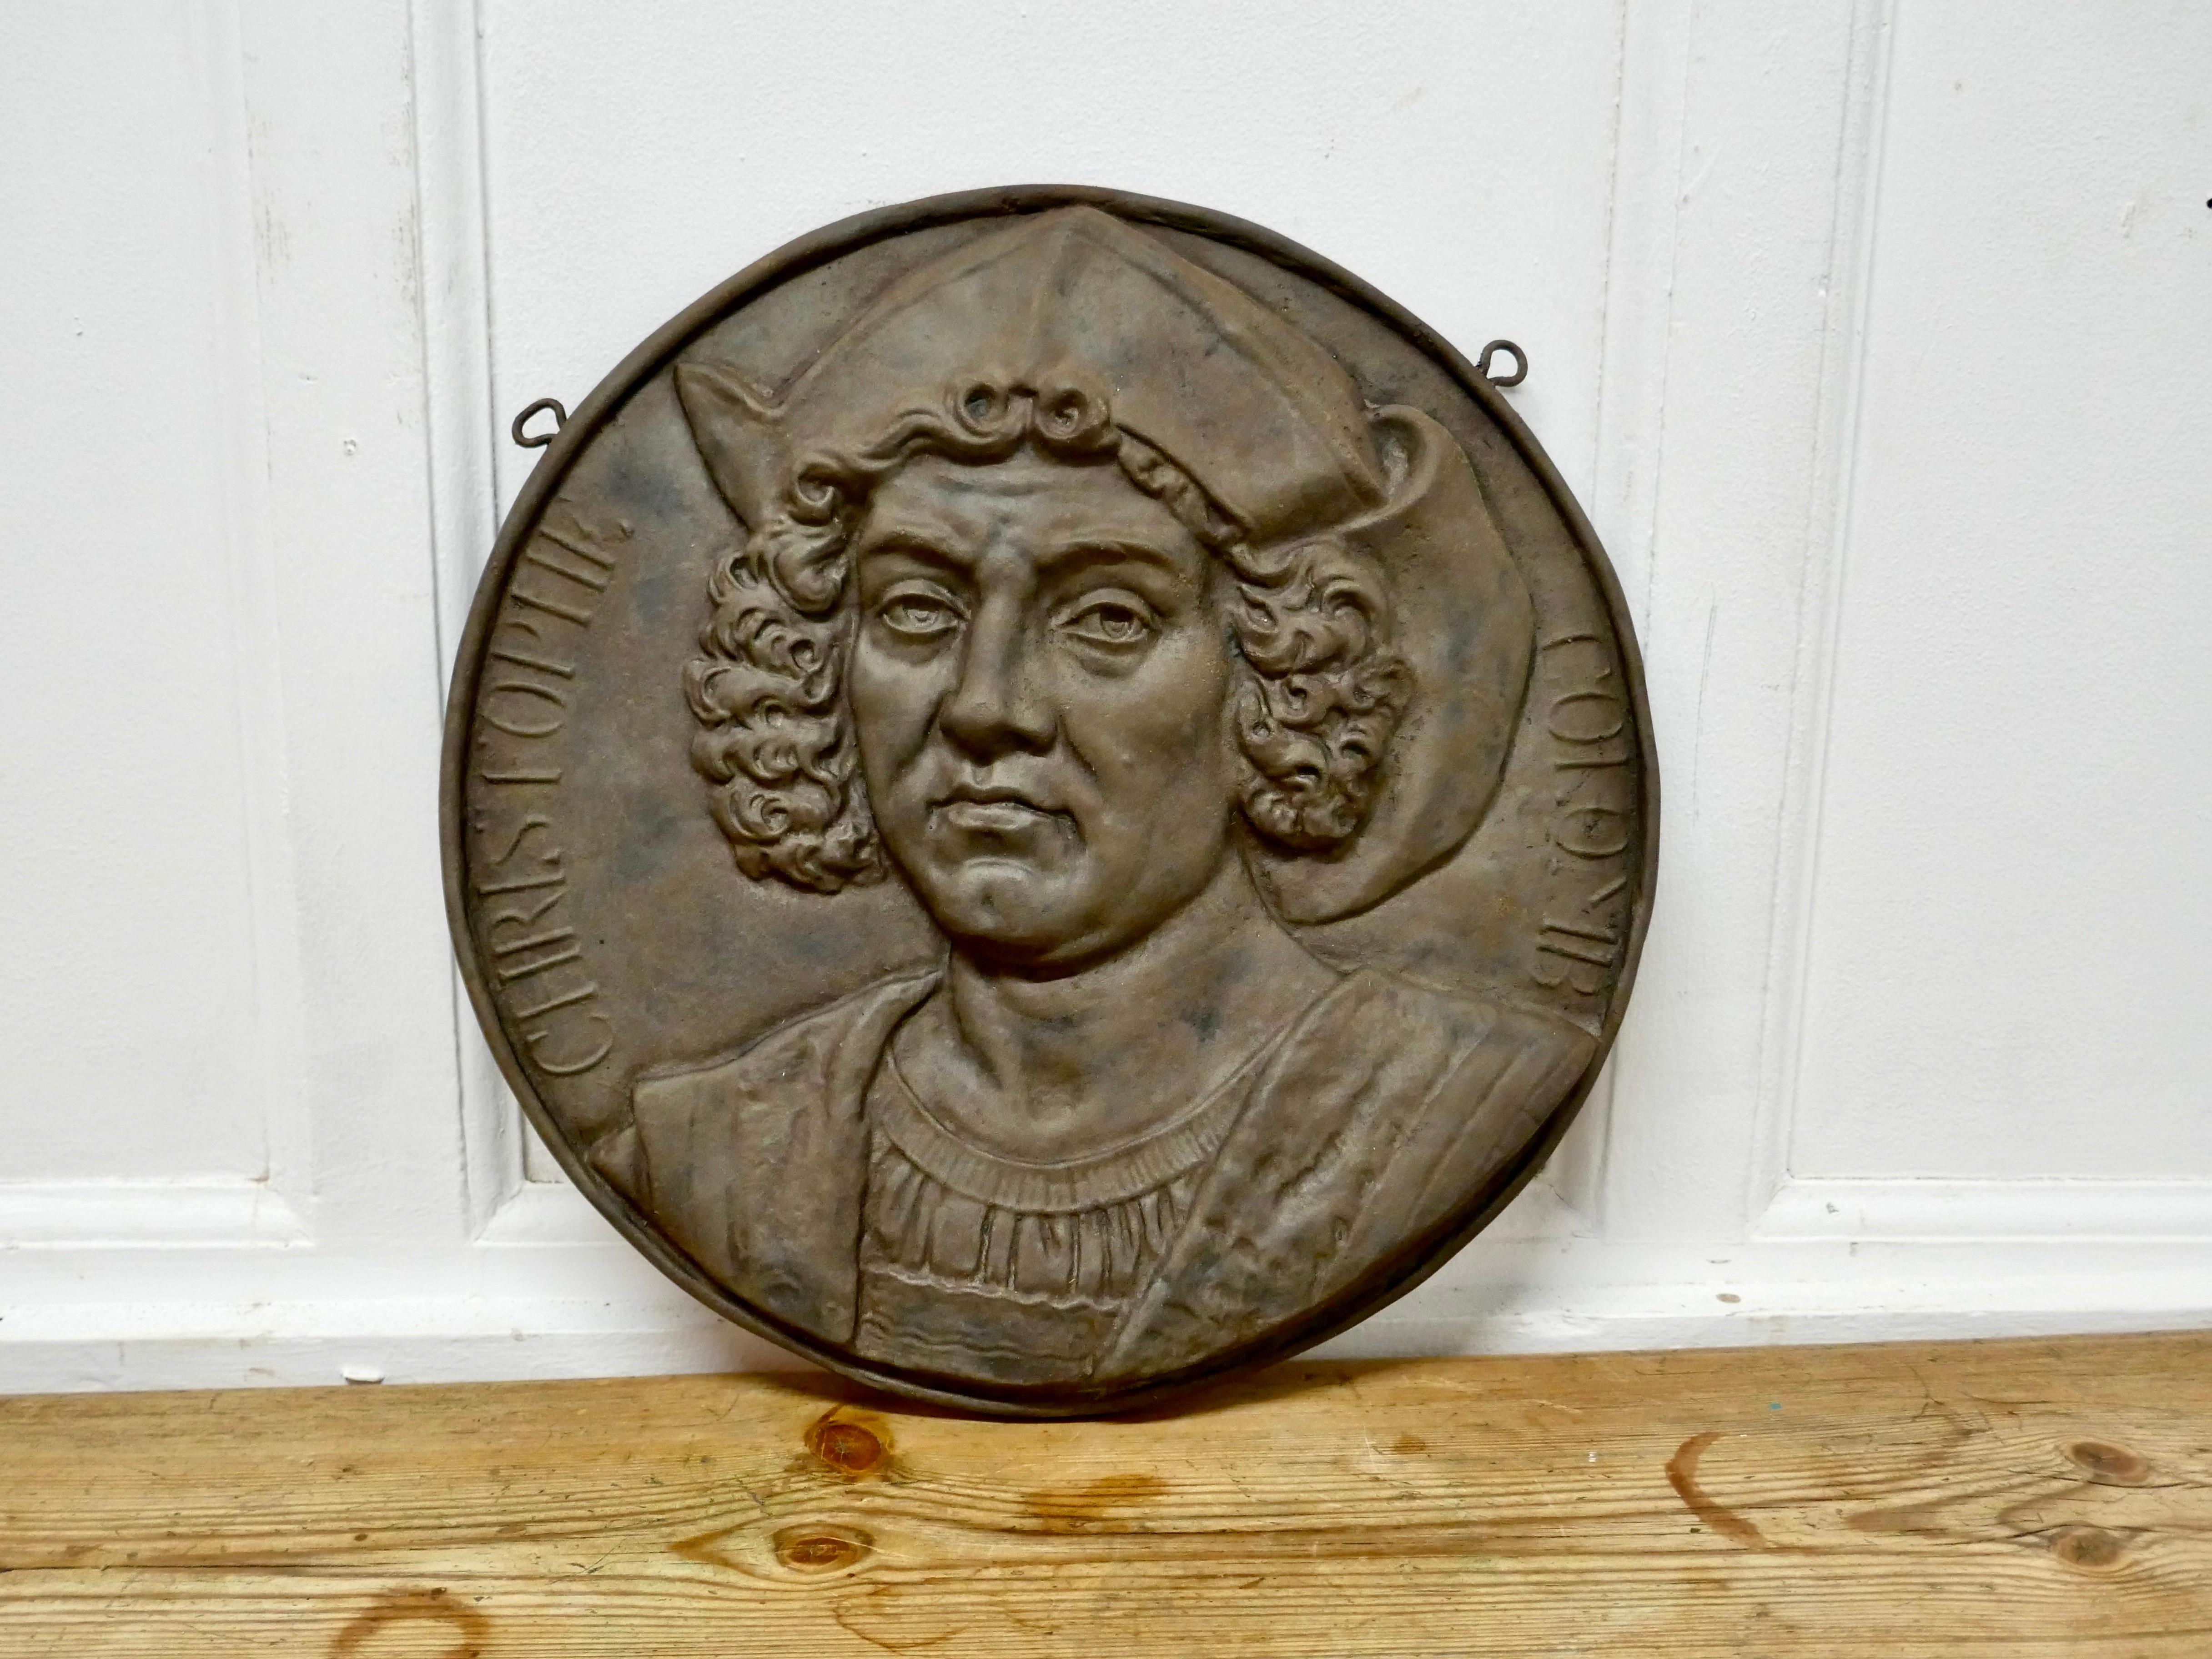 American Classical 19th Century Cast Iron Portrait Plaque of Christoper Columbus, 1451-1506